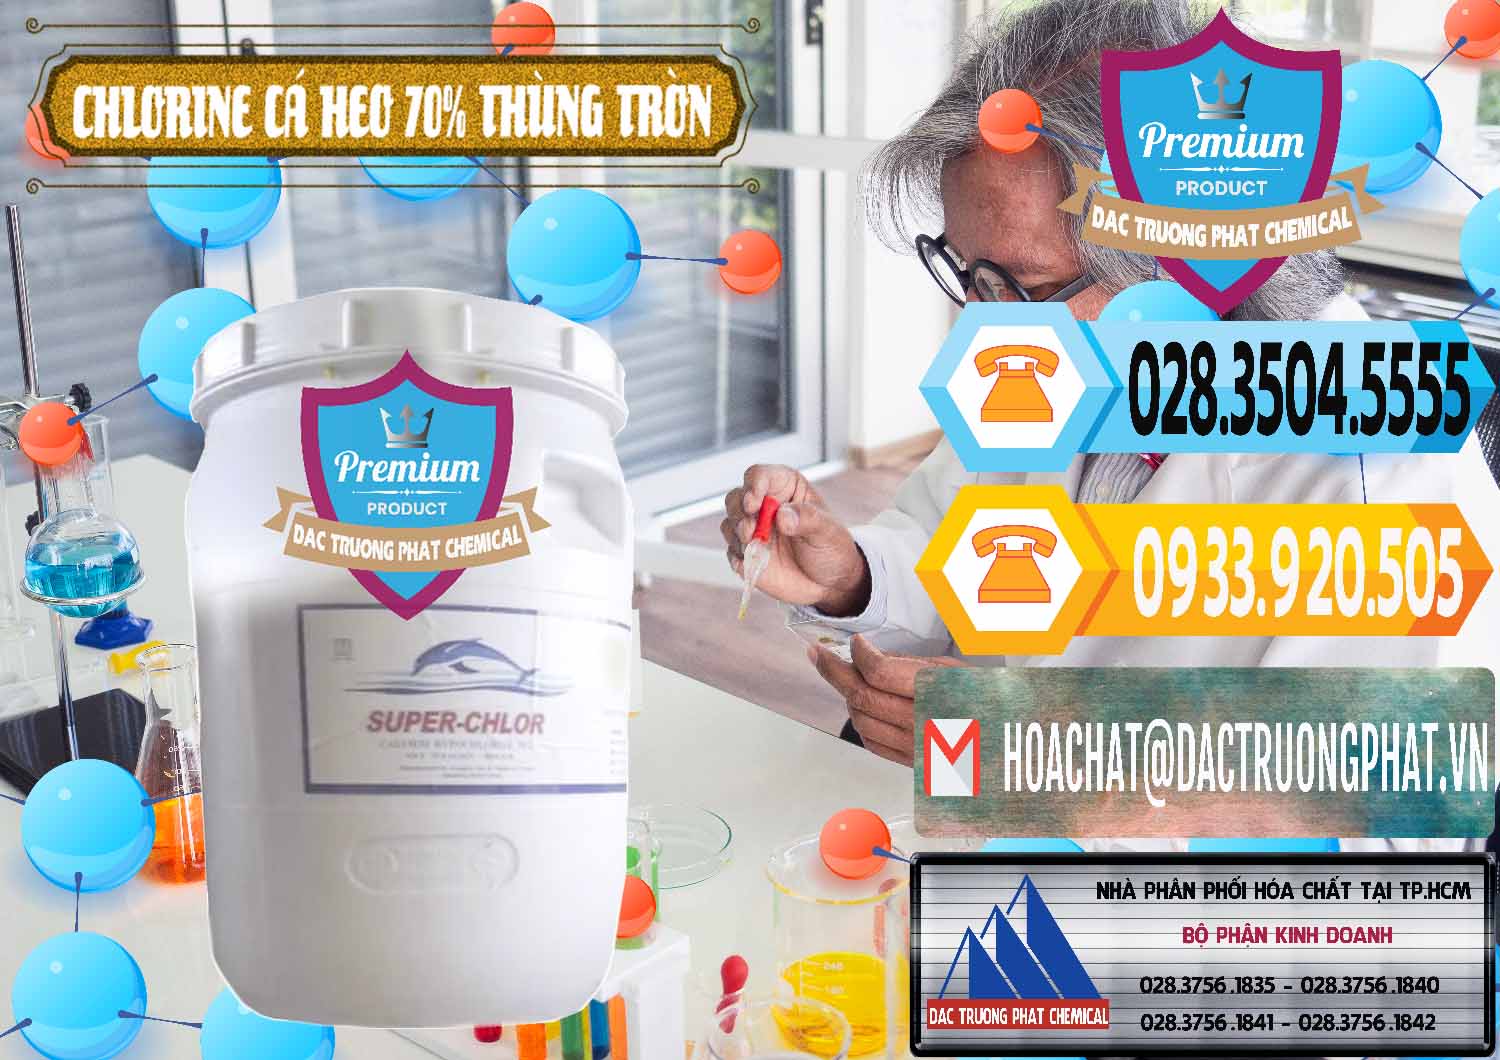 Đơn vị nhập khẩu _ bán Clorin - Chlorine Cá Heo 70% Super Chlor Thùng Tròn Nắp Trắng Trung Quốc China - 0239 - Cty chuyên bán & phân phối hóa chất tại TP.HCM - hoachattayrua.net